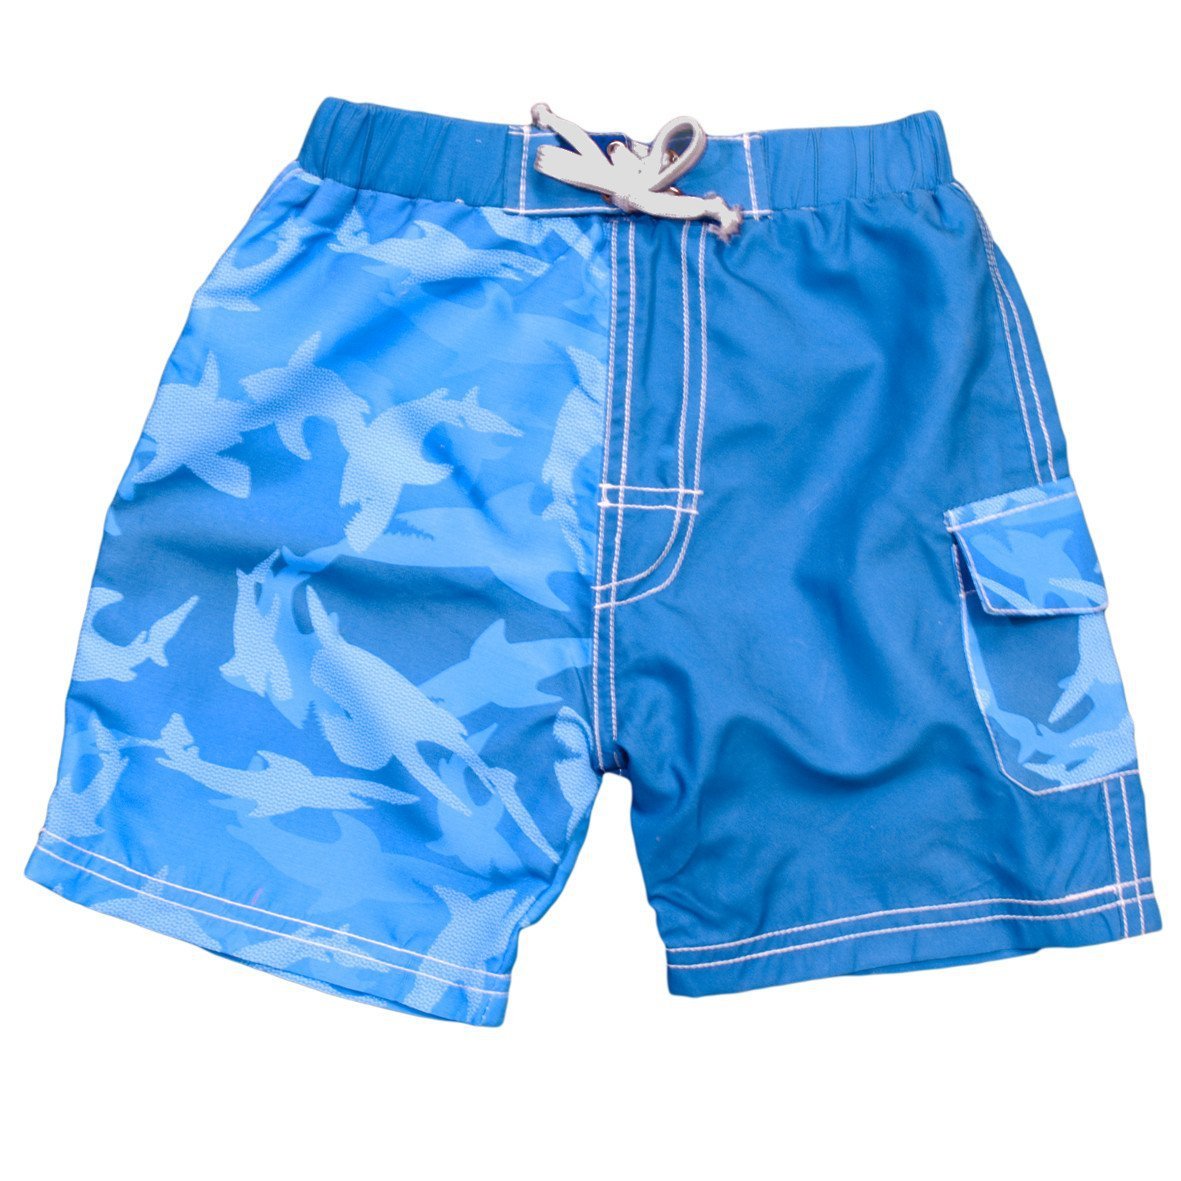 Banz® UV Boardshorts for kids - UV protective swimwear – BANZ® Carewear USA